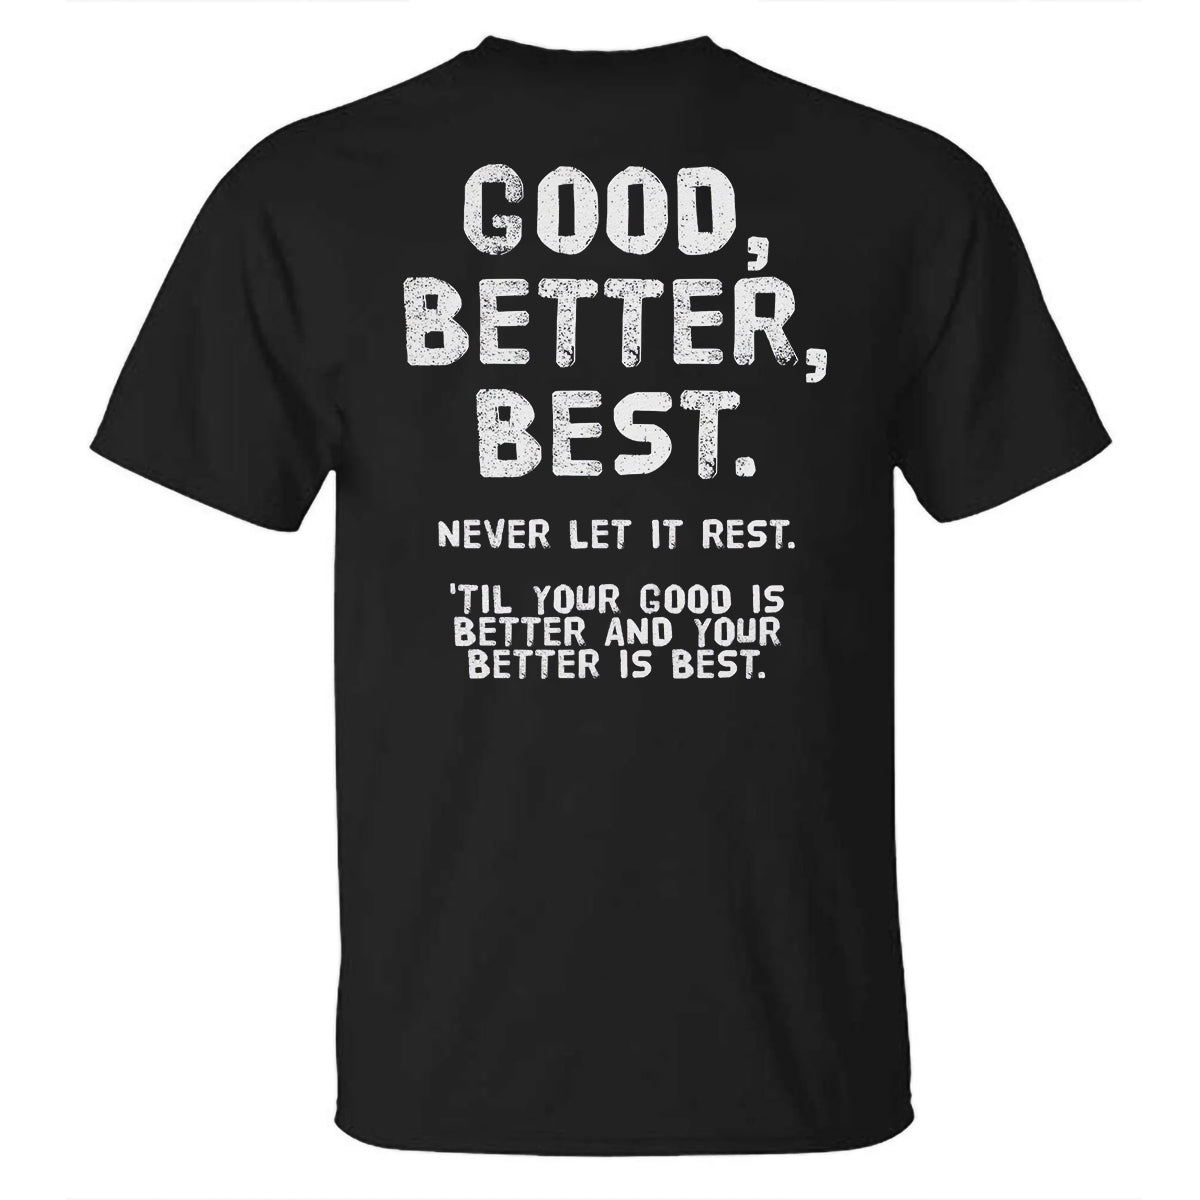 Good, Better, Best. Printed T-shirt